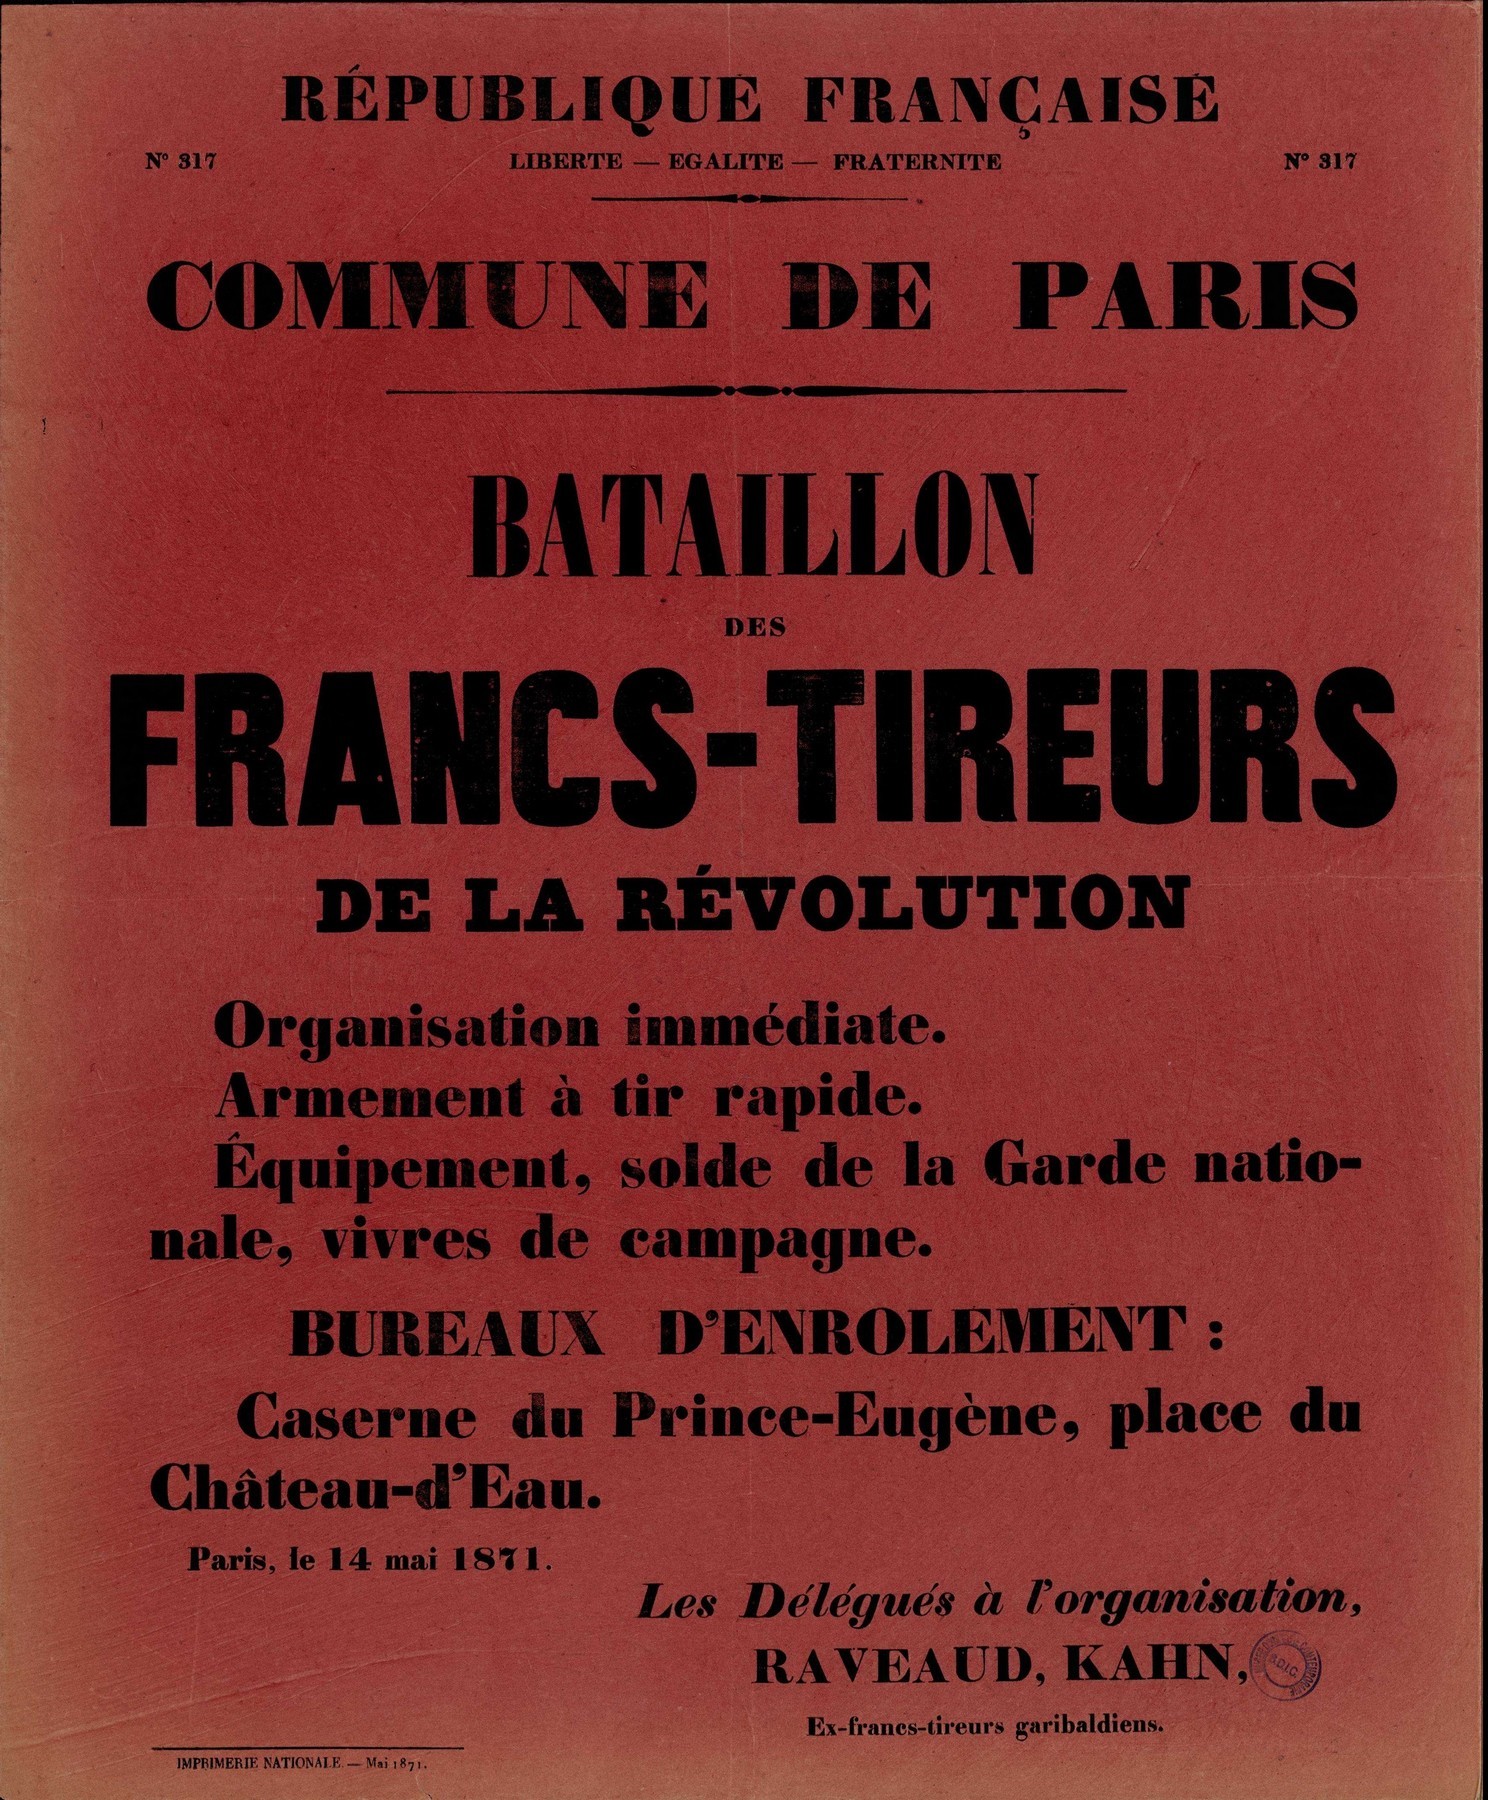 Affiche de la Commune de Paris n° 317 du 14 mai 1871 (Source BDIC)